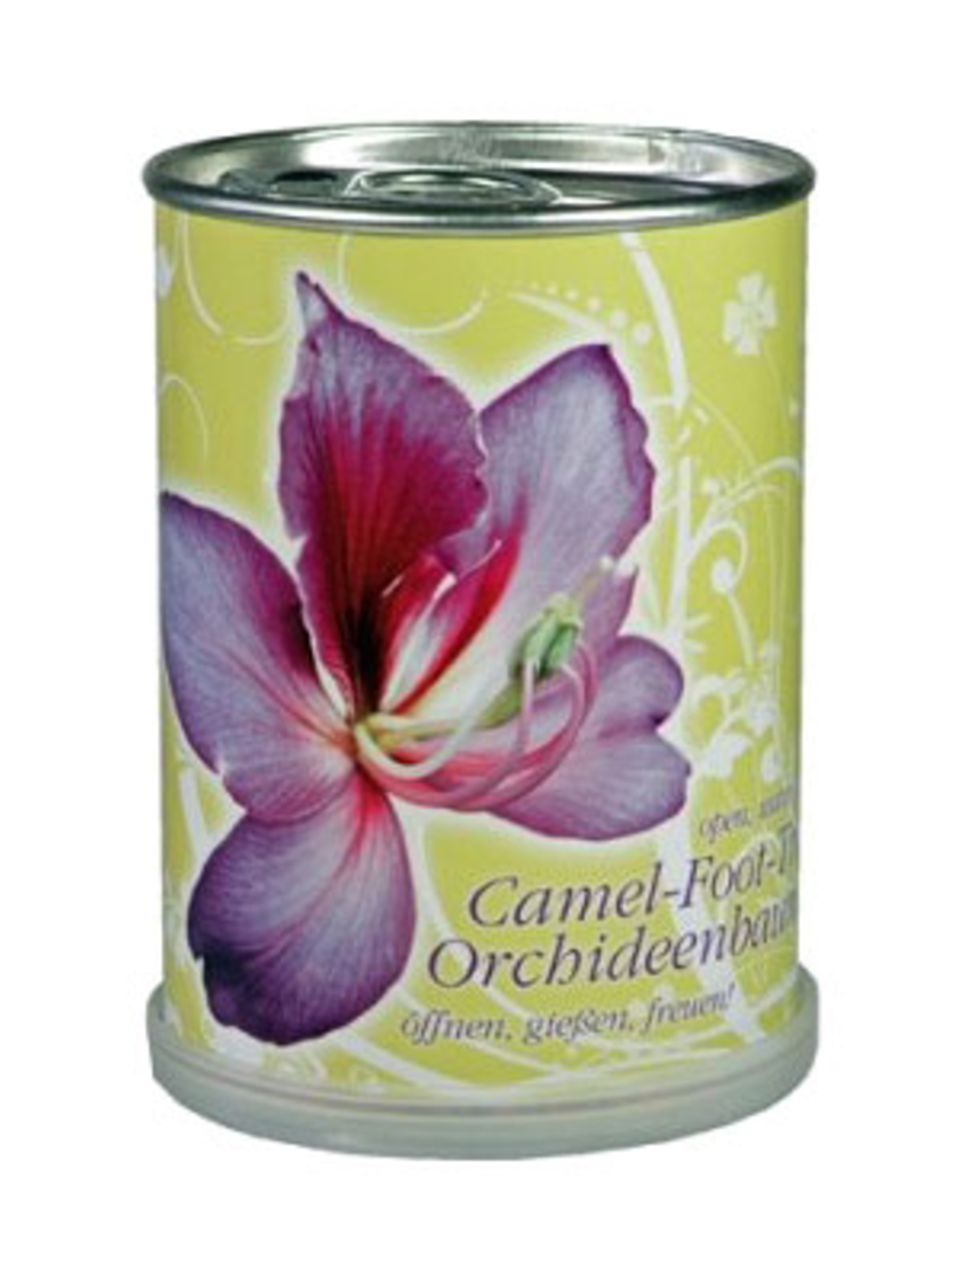 Die Orchidee in der Dose. Öffnen, gießen und schon duftet es in deinem Zimmer nach Orchidee. Um sechs Euro bei Tolle Geschenke.